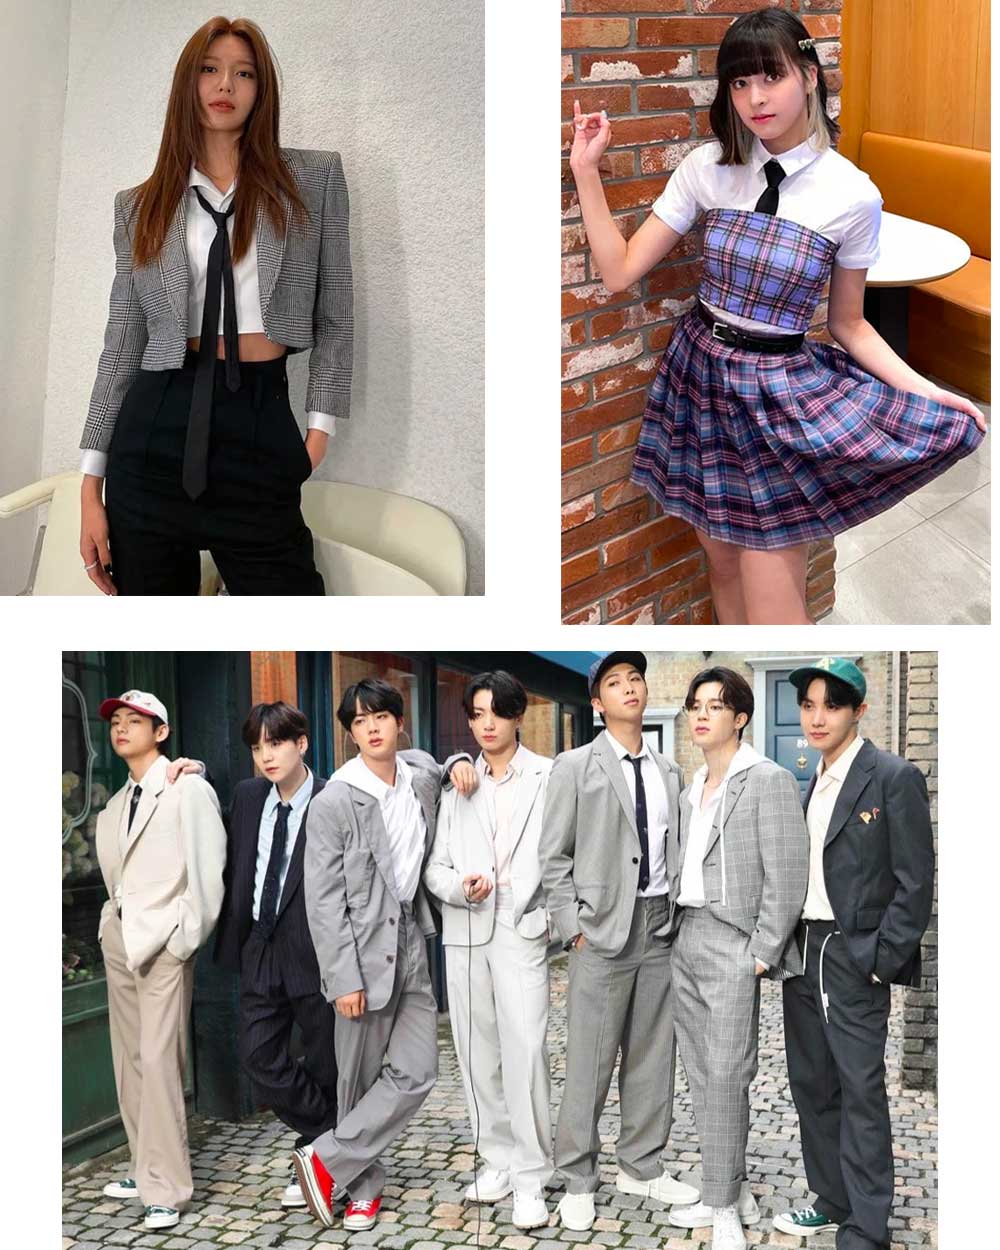 Korean Preppy style fashion outfits